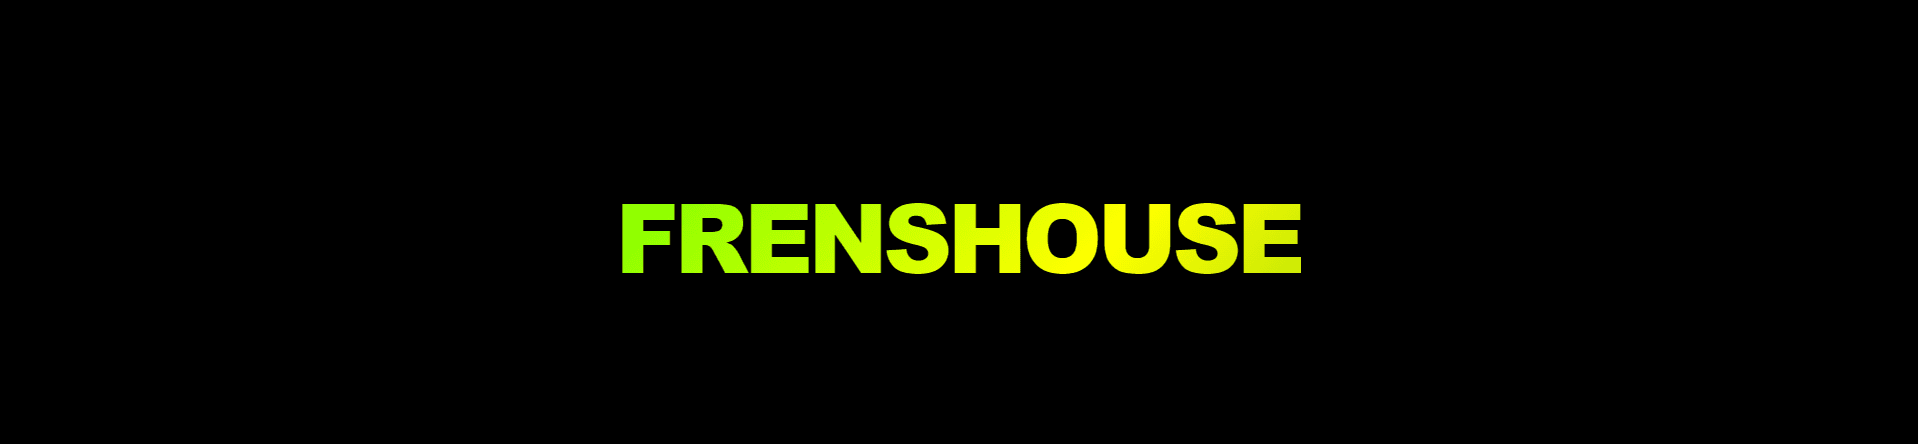 frensHouse banner